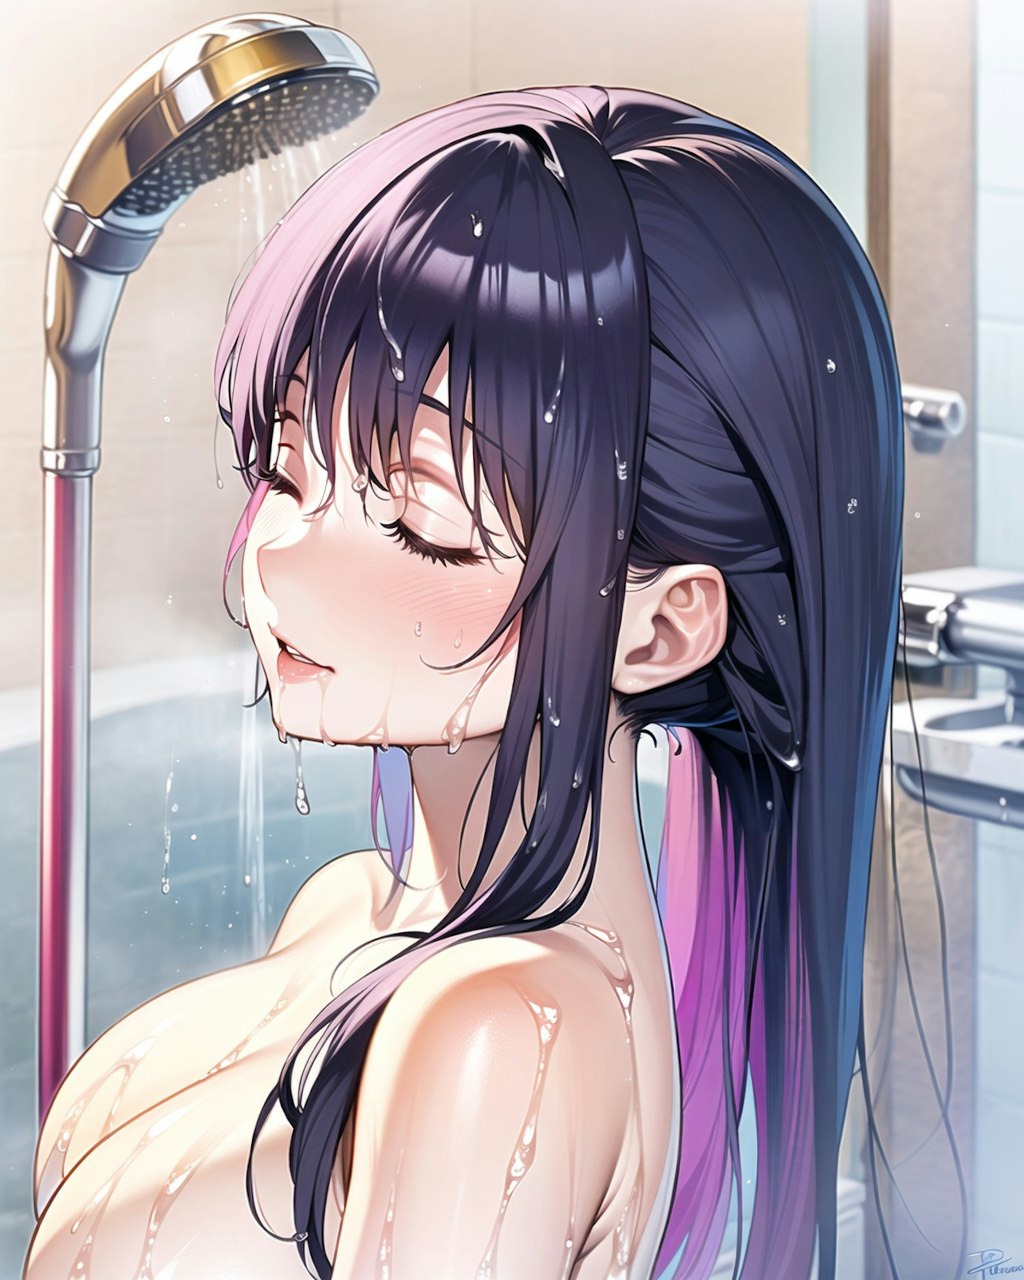 シャワー中のお姉さん